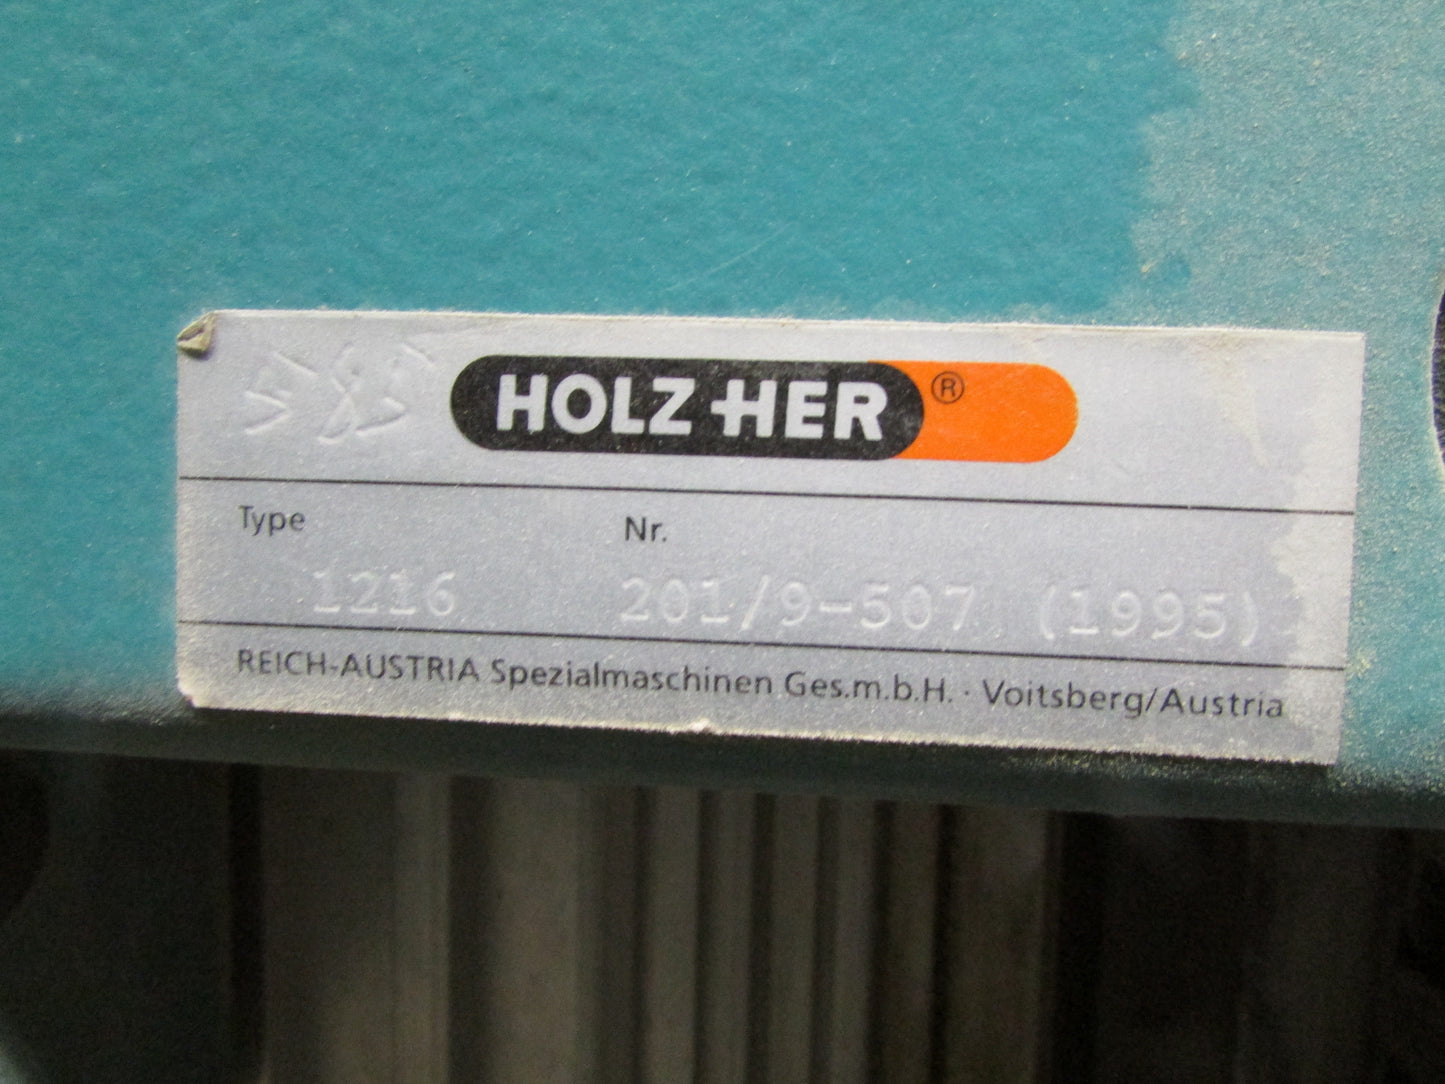 HolzHer 1216